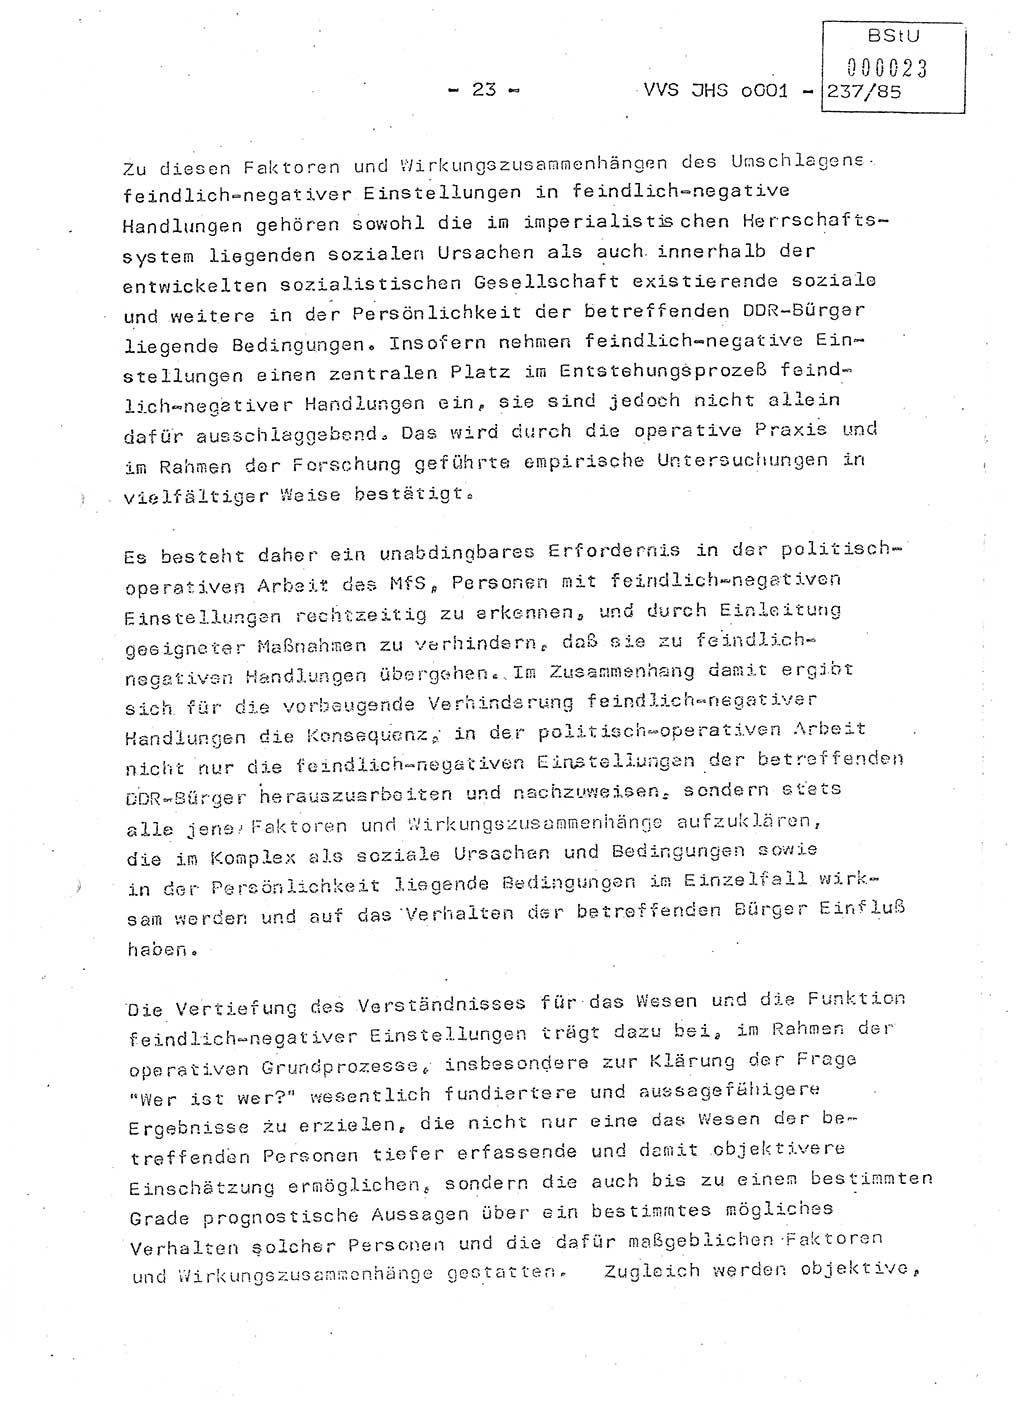 Dissertation Oberstleutnant Peter Jakulski (JHS), Oberstleutnat Christian Rudolph (HA Ⅸ), Major Horst Böttger (ZMD), Major Wolfgang Grüneberg (JHS), Major Albert Meutsch (JHS), Ministerium für Staatssicherheit (MfS) [Deutsche Demokratische Republik (DDR)], Juristische Hochschule (JHS), Vertrauliche Verschlußsache (VVS) o001-237/85, Potsdam 1985, Seite 23 (Diss. MfS DDR JHS VVS o001-237/85 1985, S. 23)